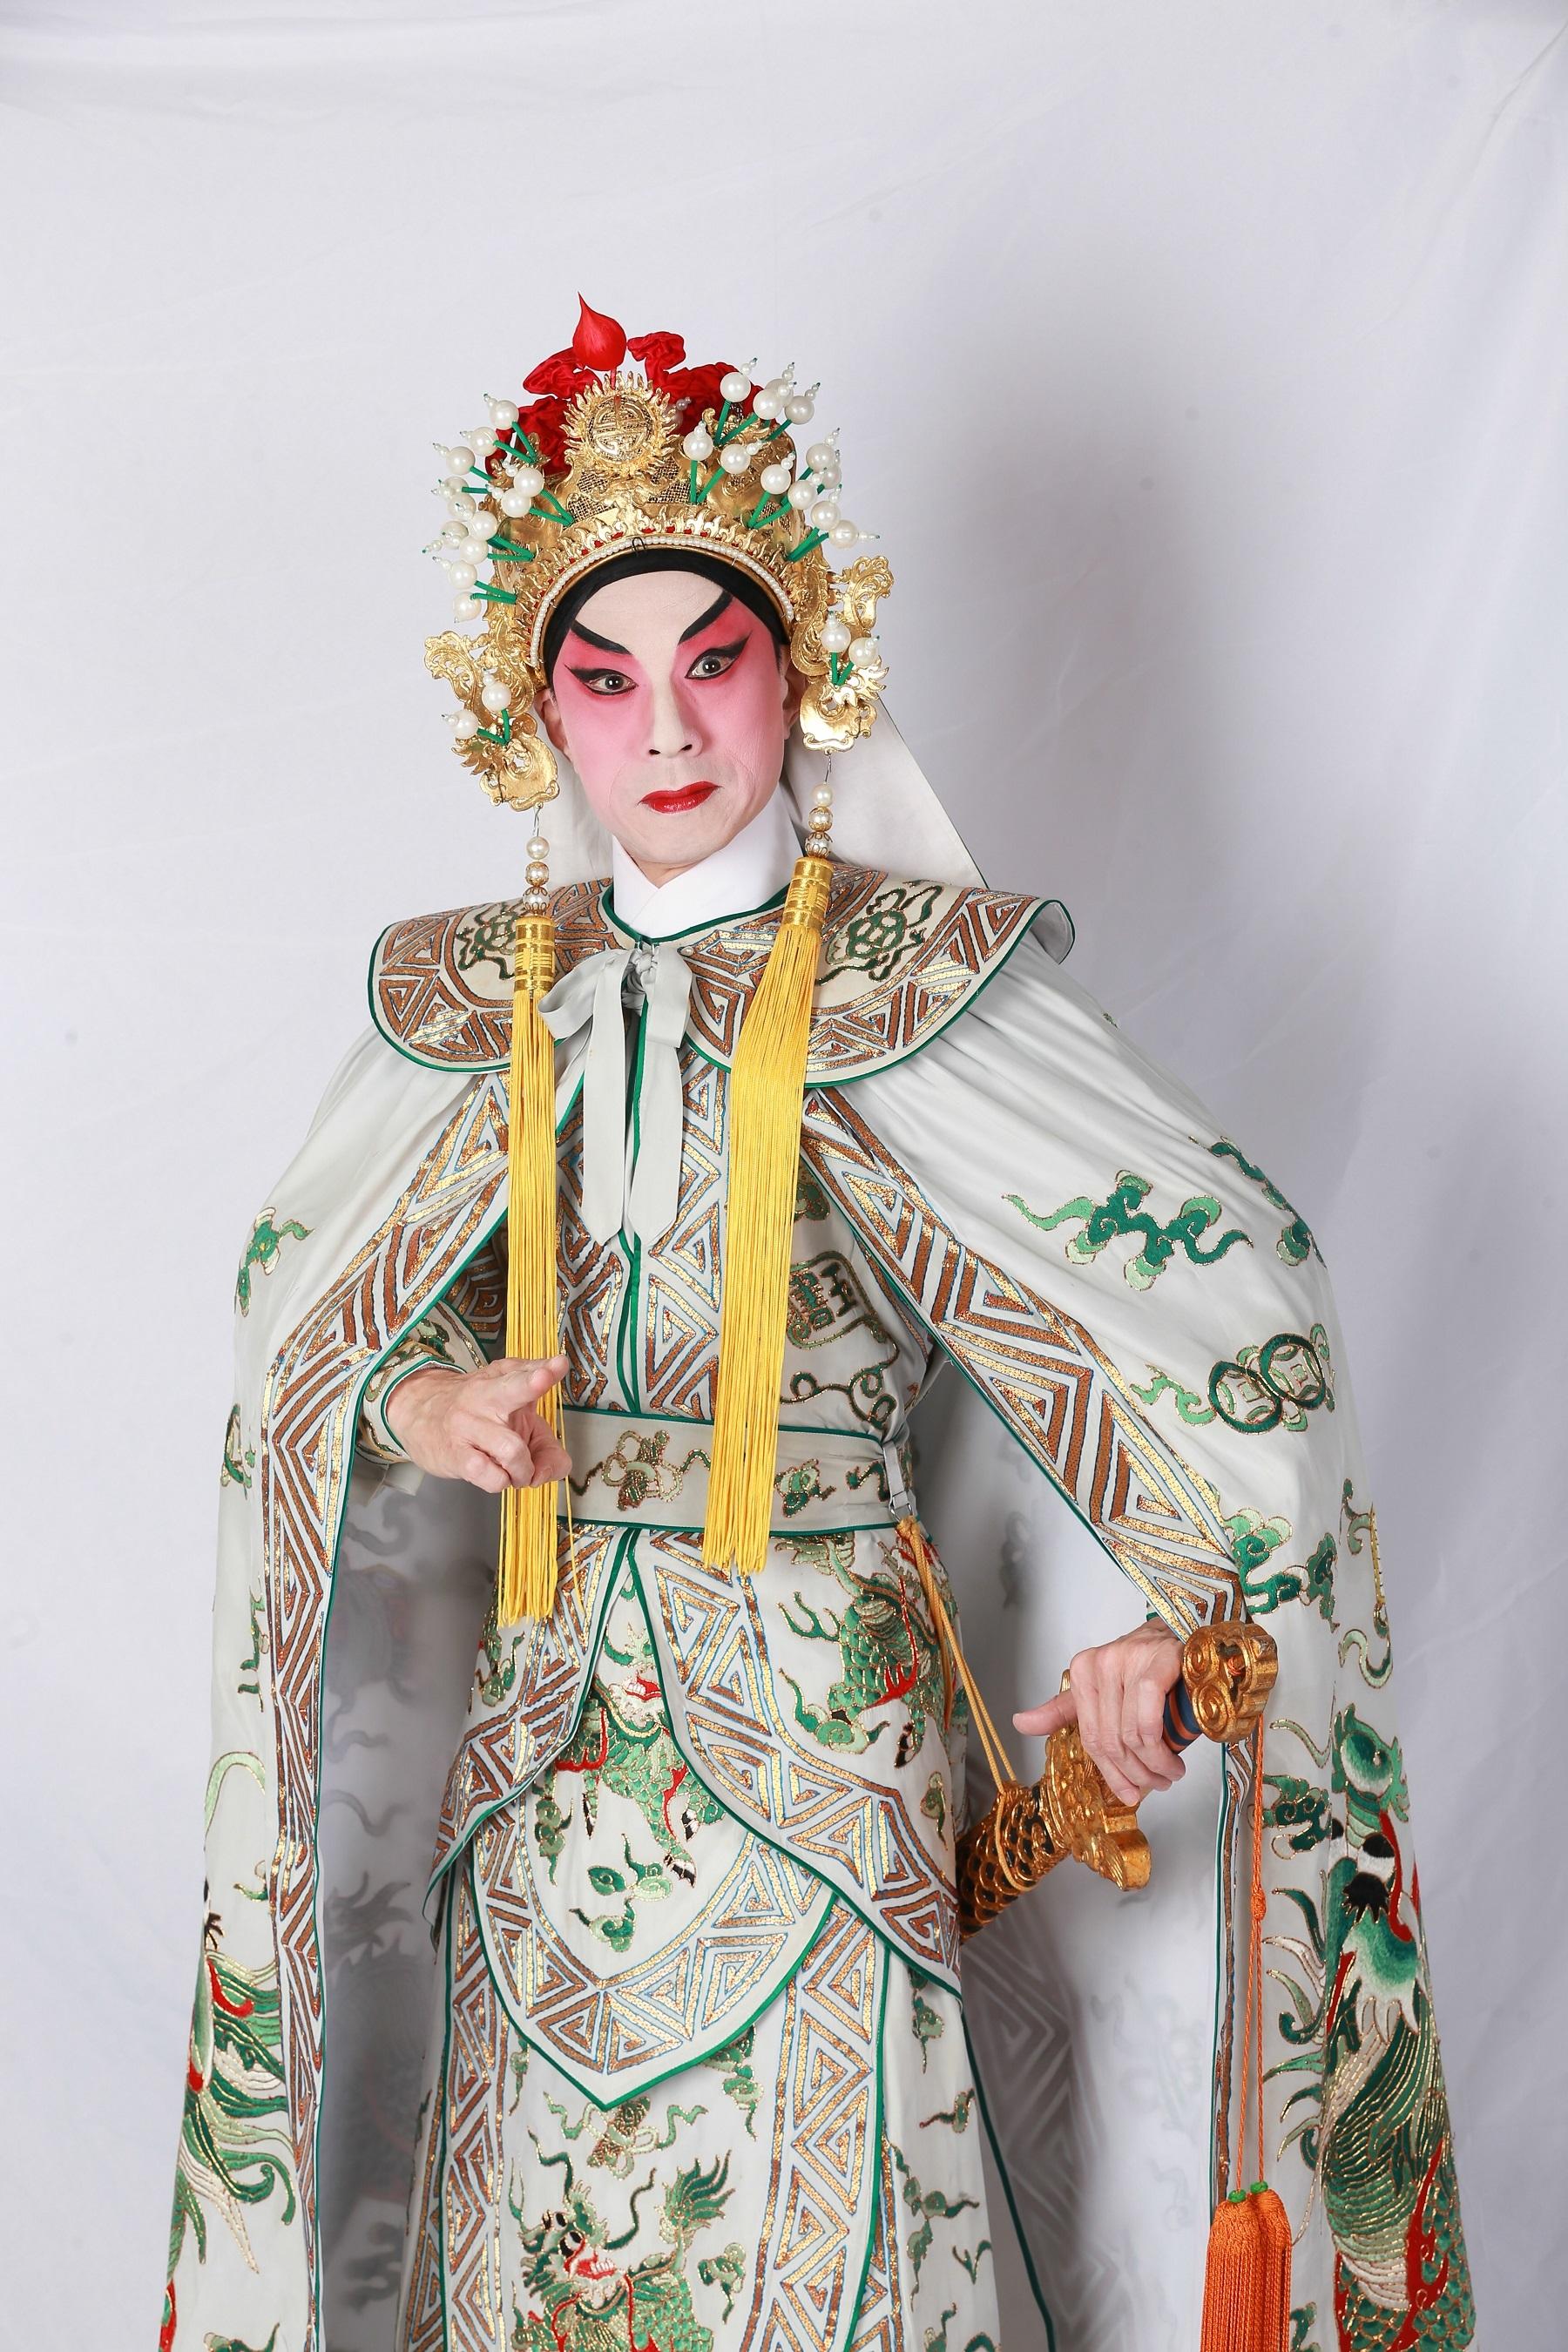 由康樂及文化事務署主辦的中國戲曲節今年雲集一眾本地粵劇精英傾力演出「粵劇武生藝術專場」。圖為名伶李龍。